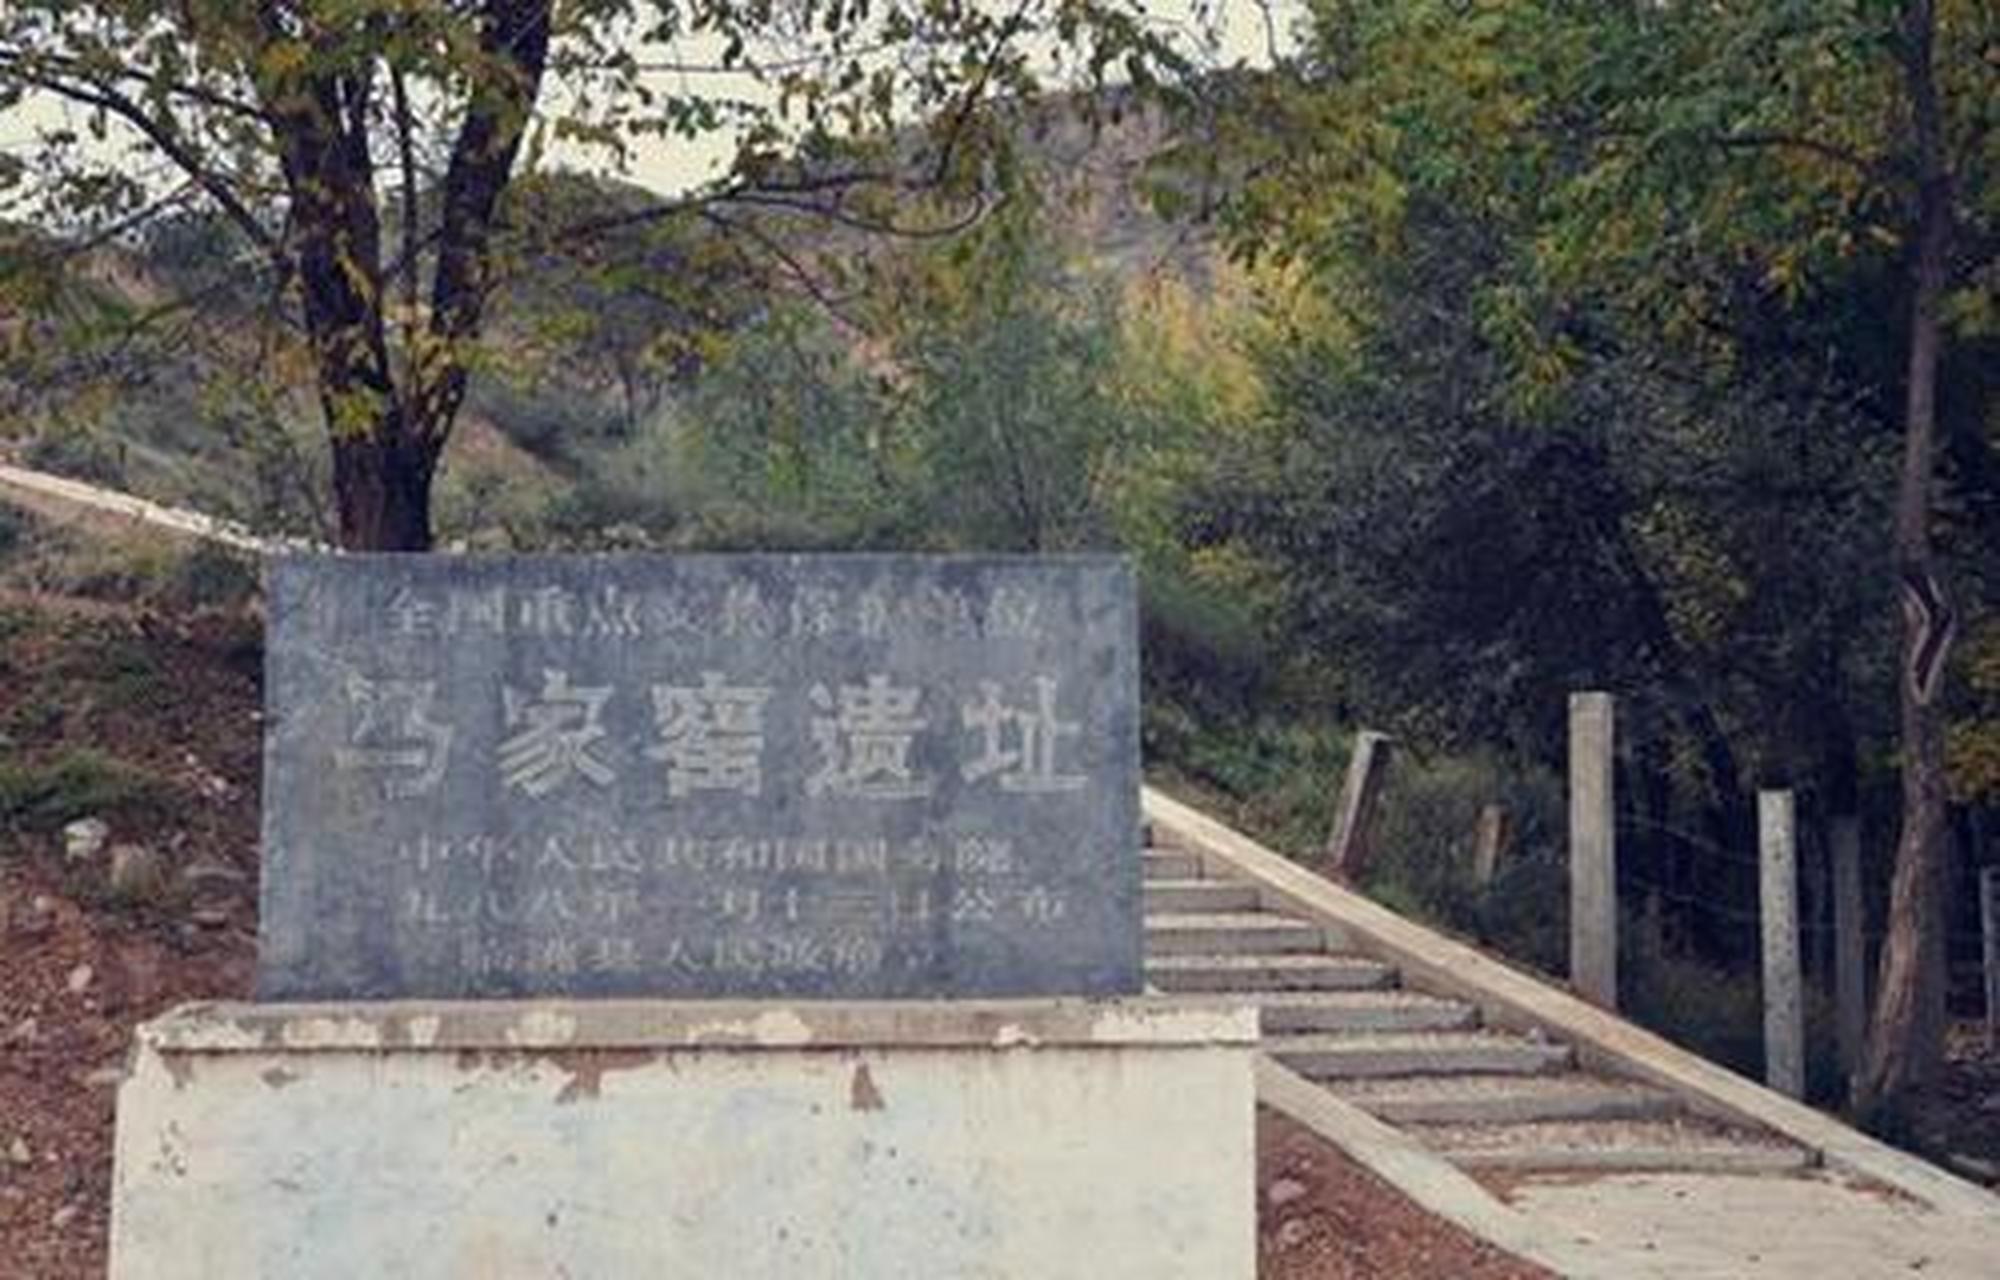 马家窑遗址位于甘肃省临洮县洮河西岸的马家窑村麻峪沟口